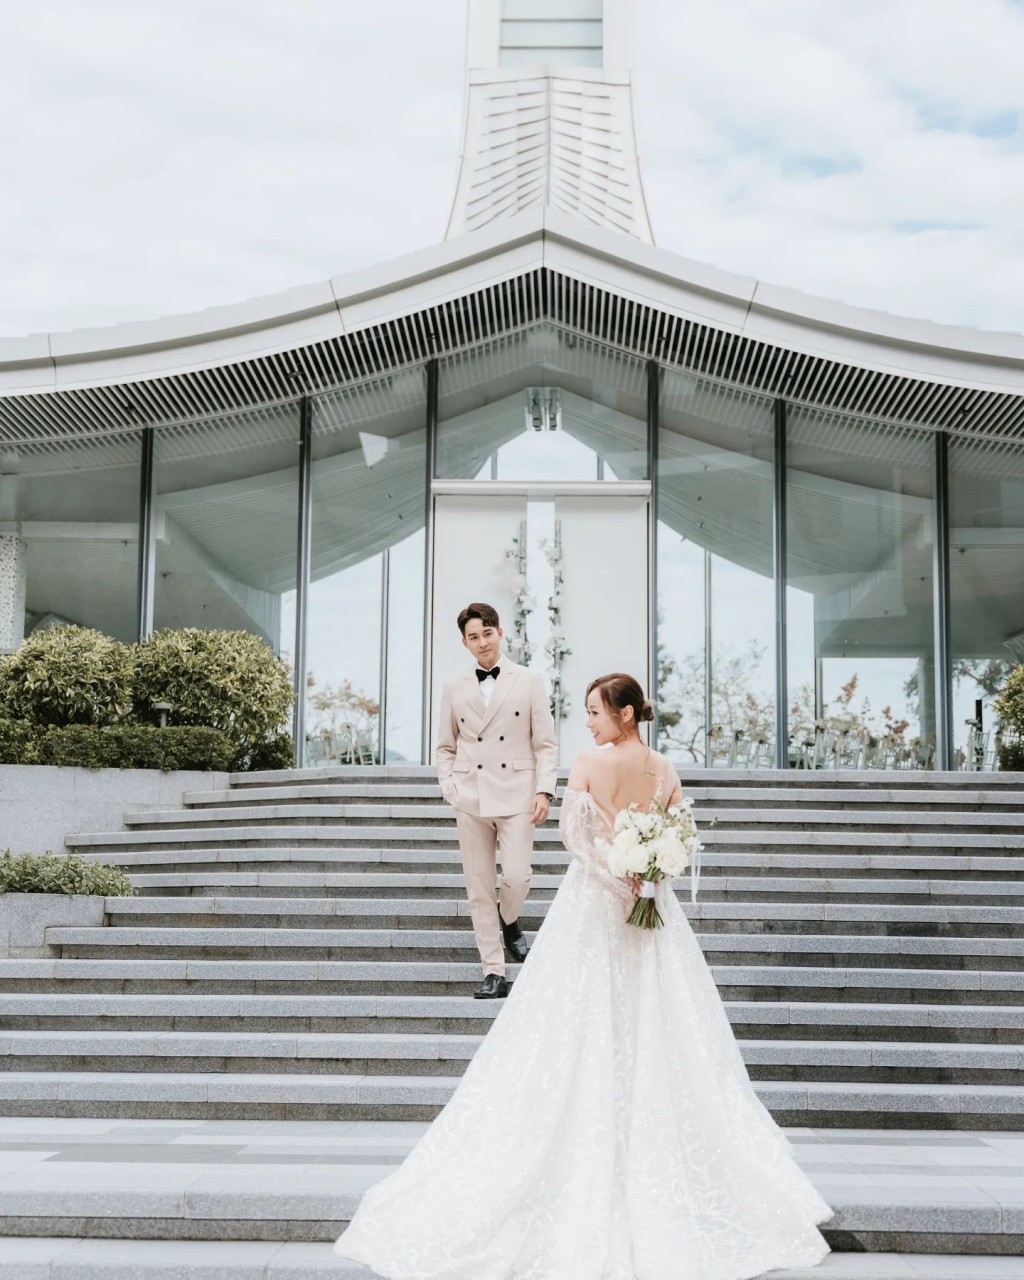 黃美棋鍾健威結婚於4月6日舉行婚禮。